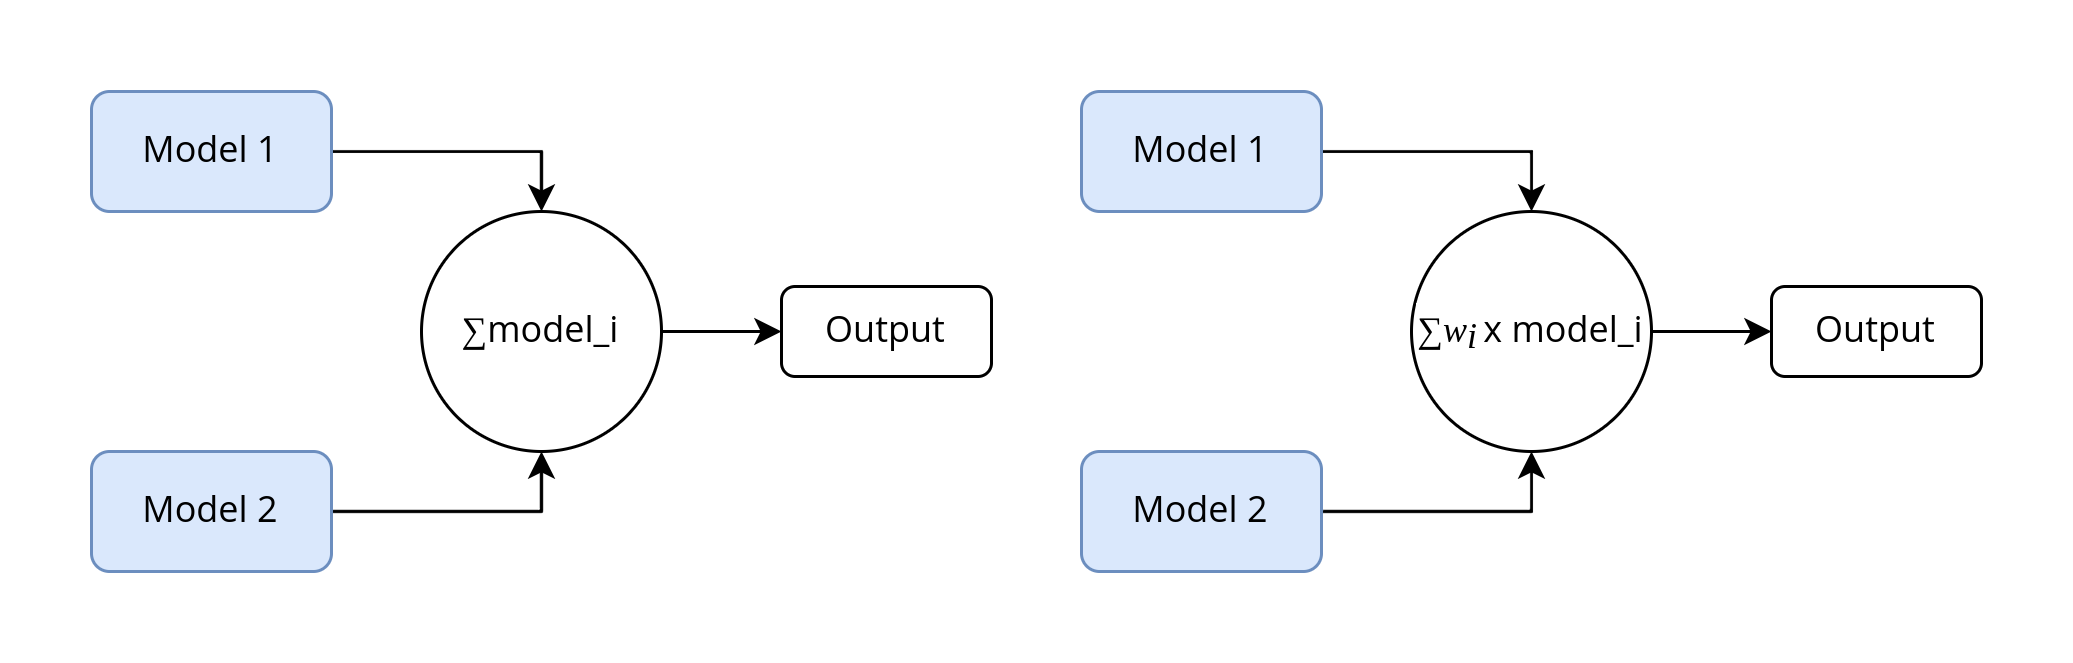 Ensemble—A Bundle of ML Models